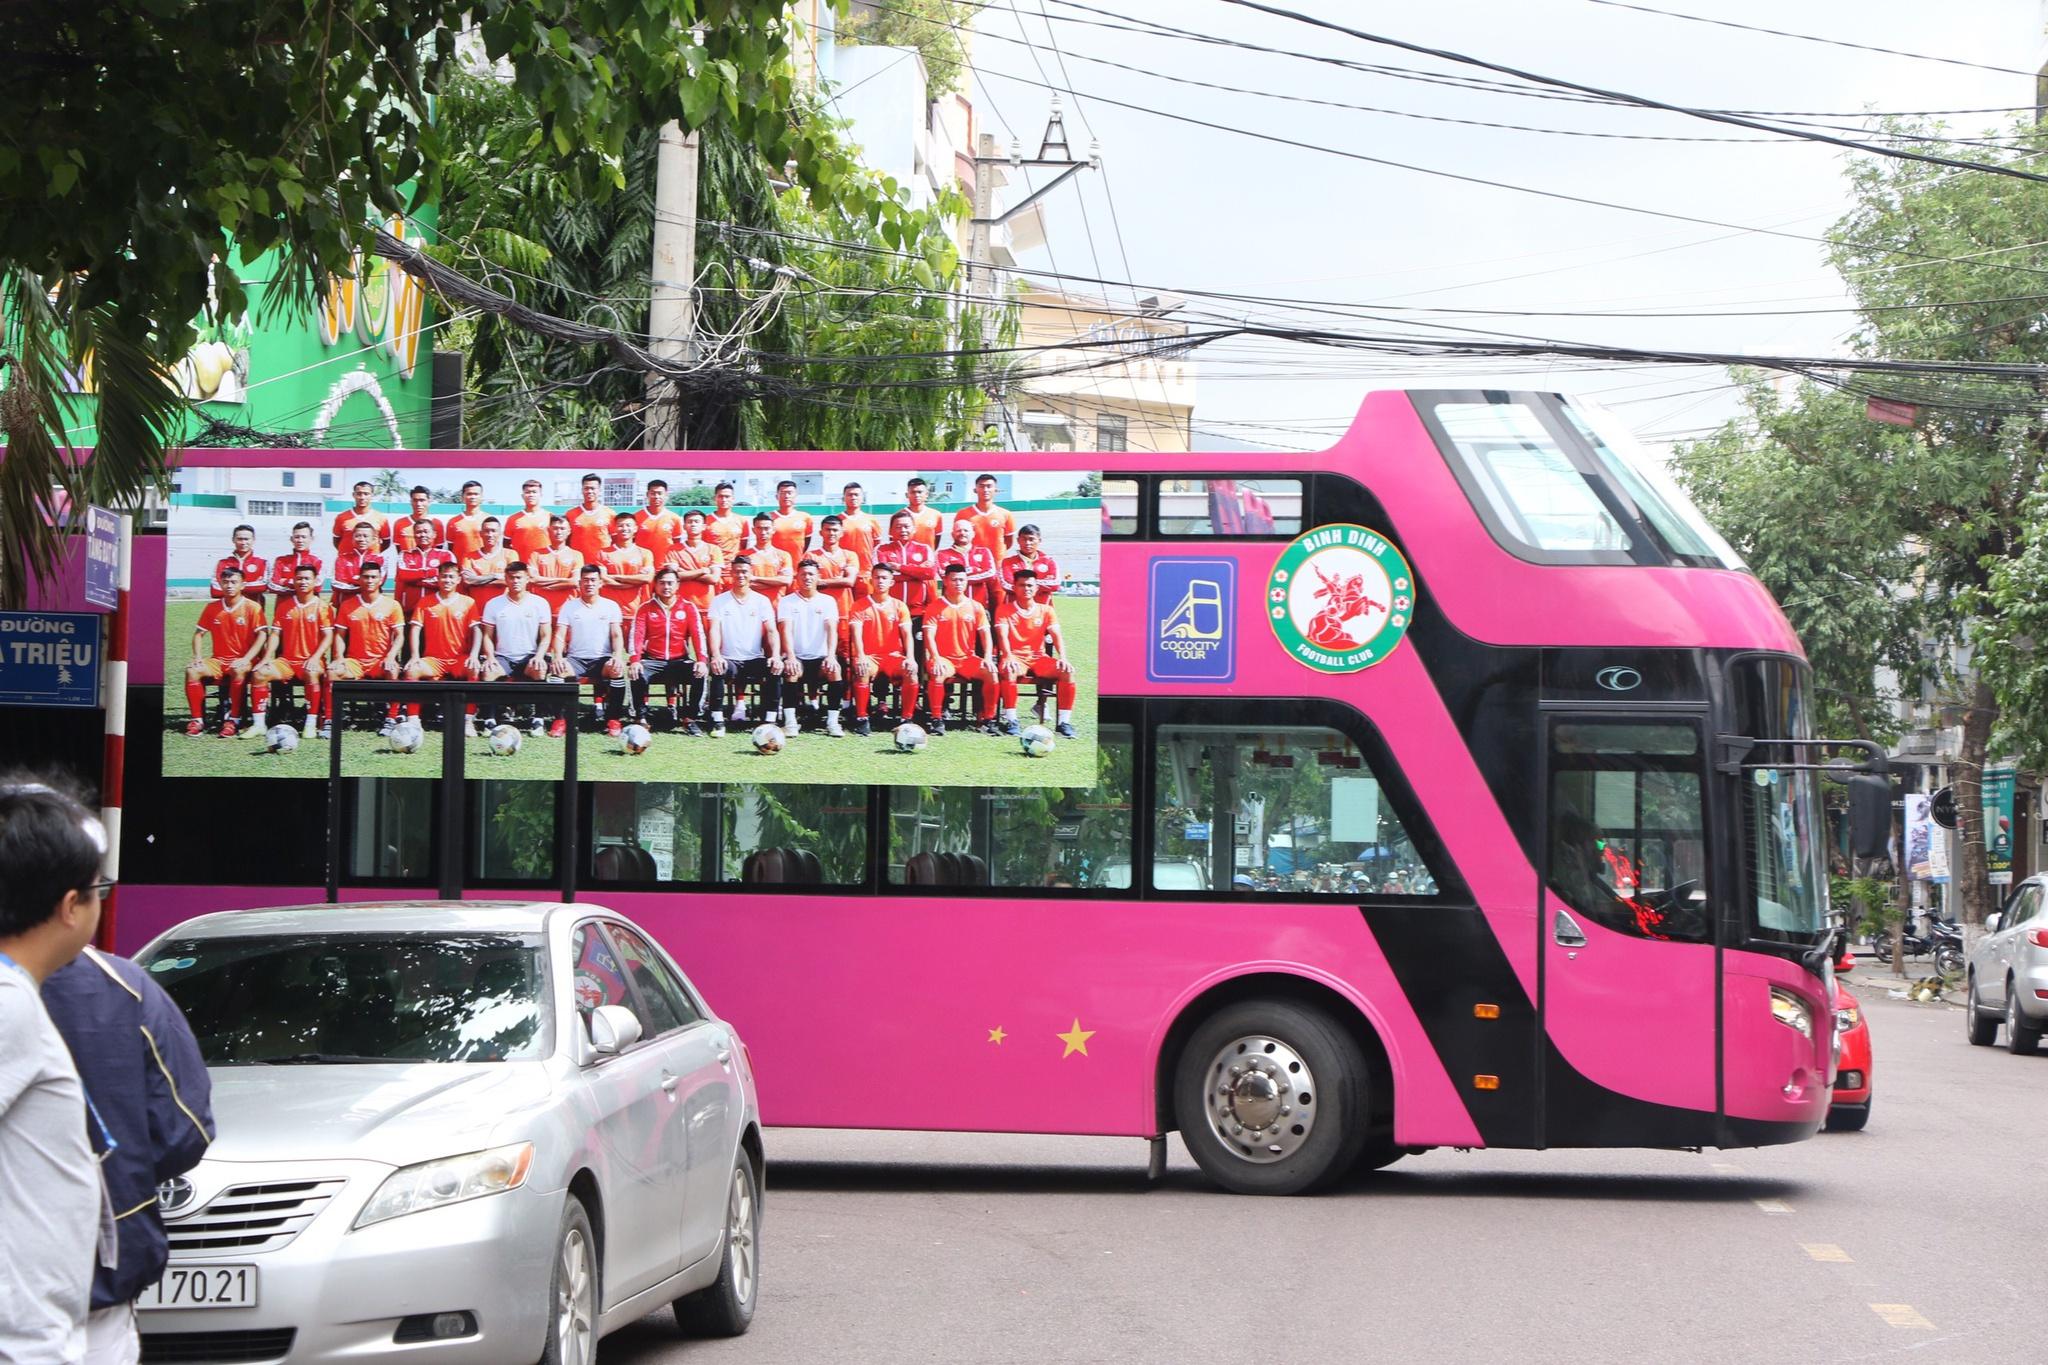 Kết quả suất lên hạng V-League: Chúc mừng CLB Bình Định, tiếc cho Bà Rịa - Vũng Tàu! - ảnh 3